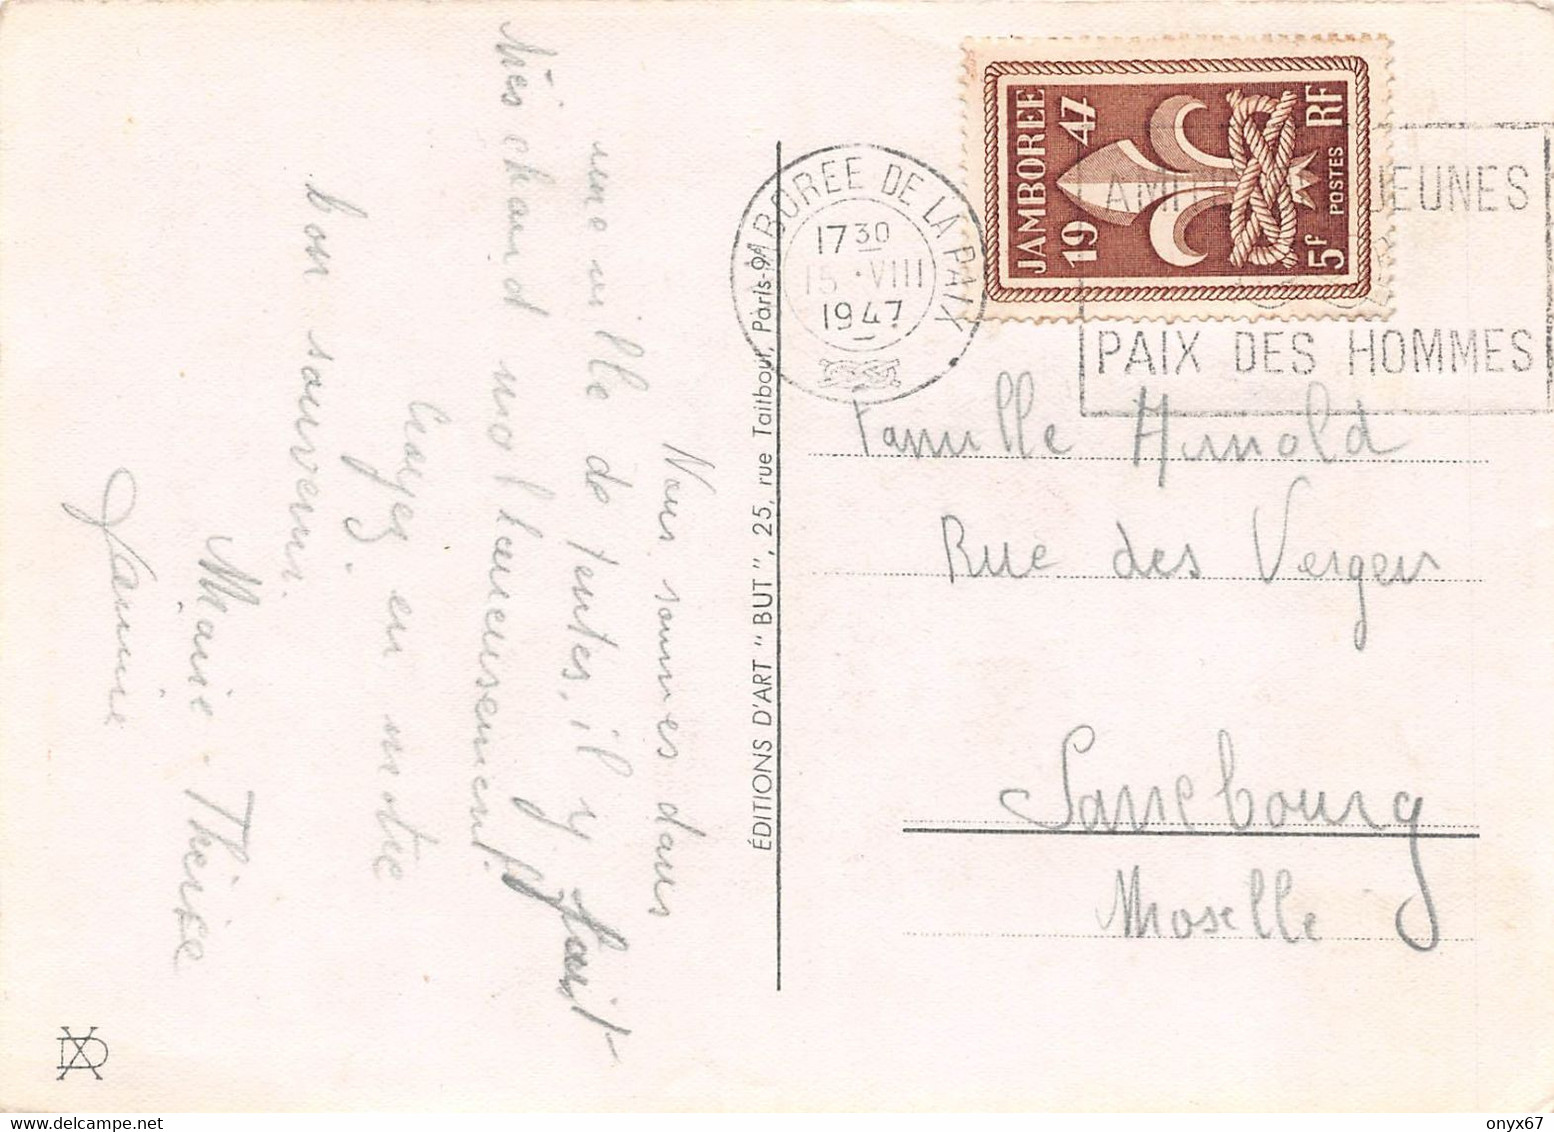 GF-SCOUTISME-SCOUT-Jeune Garçon-grenouille-Cachet-Tampon JAMBOREE De La Paix 1947-Timbre-Stamp-Briefmarke-GRAND FORMAT - Scoutisme